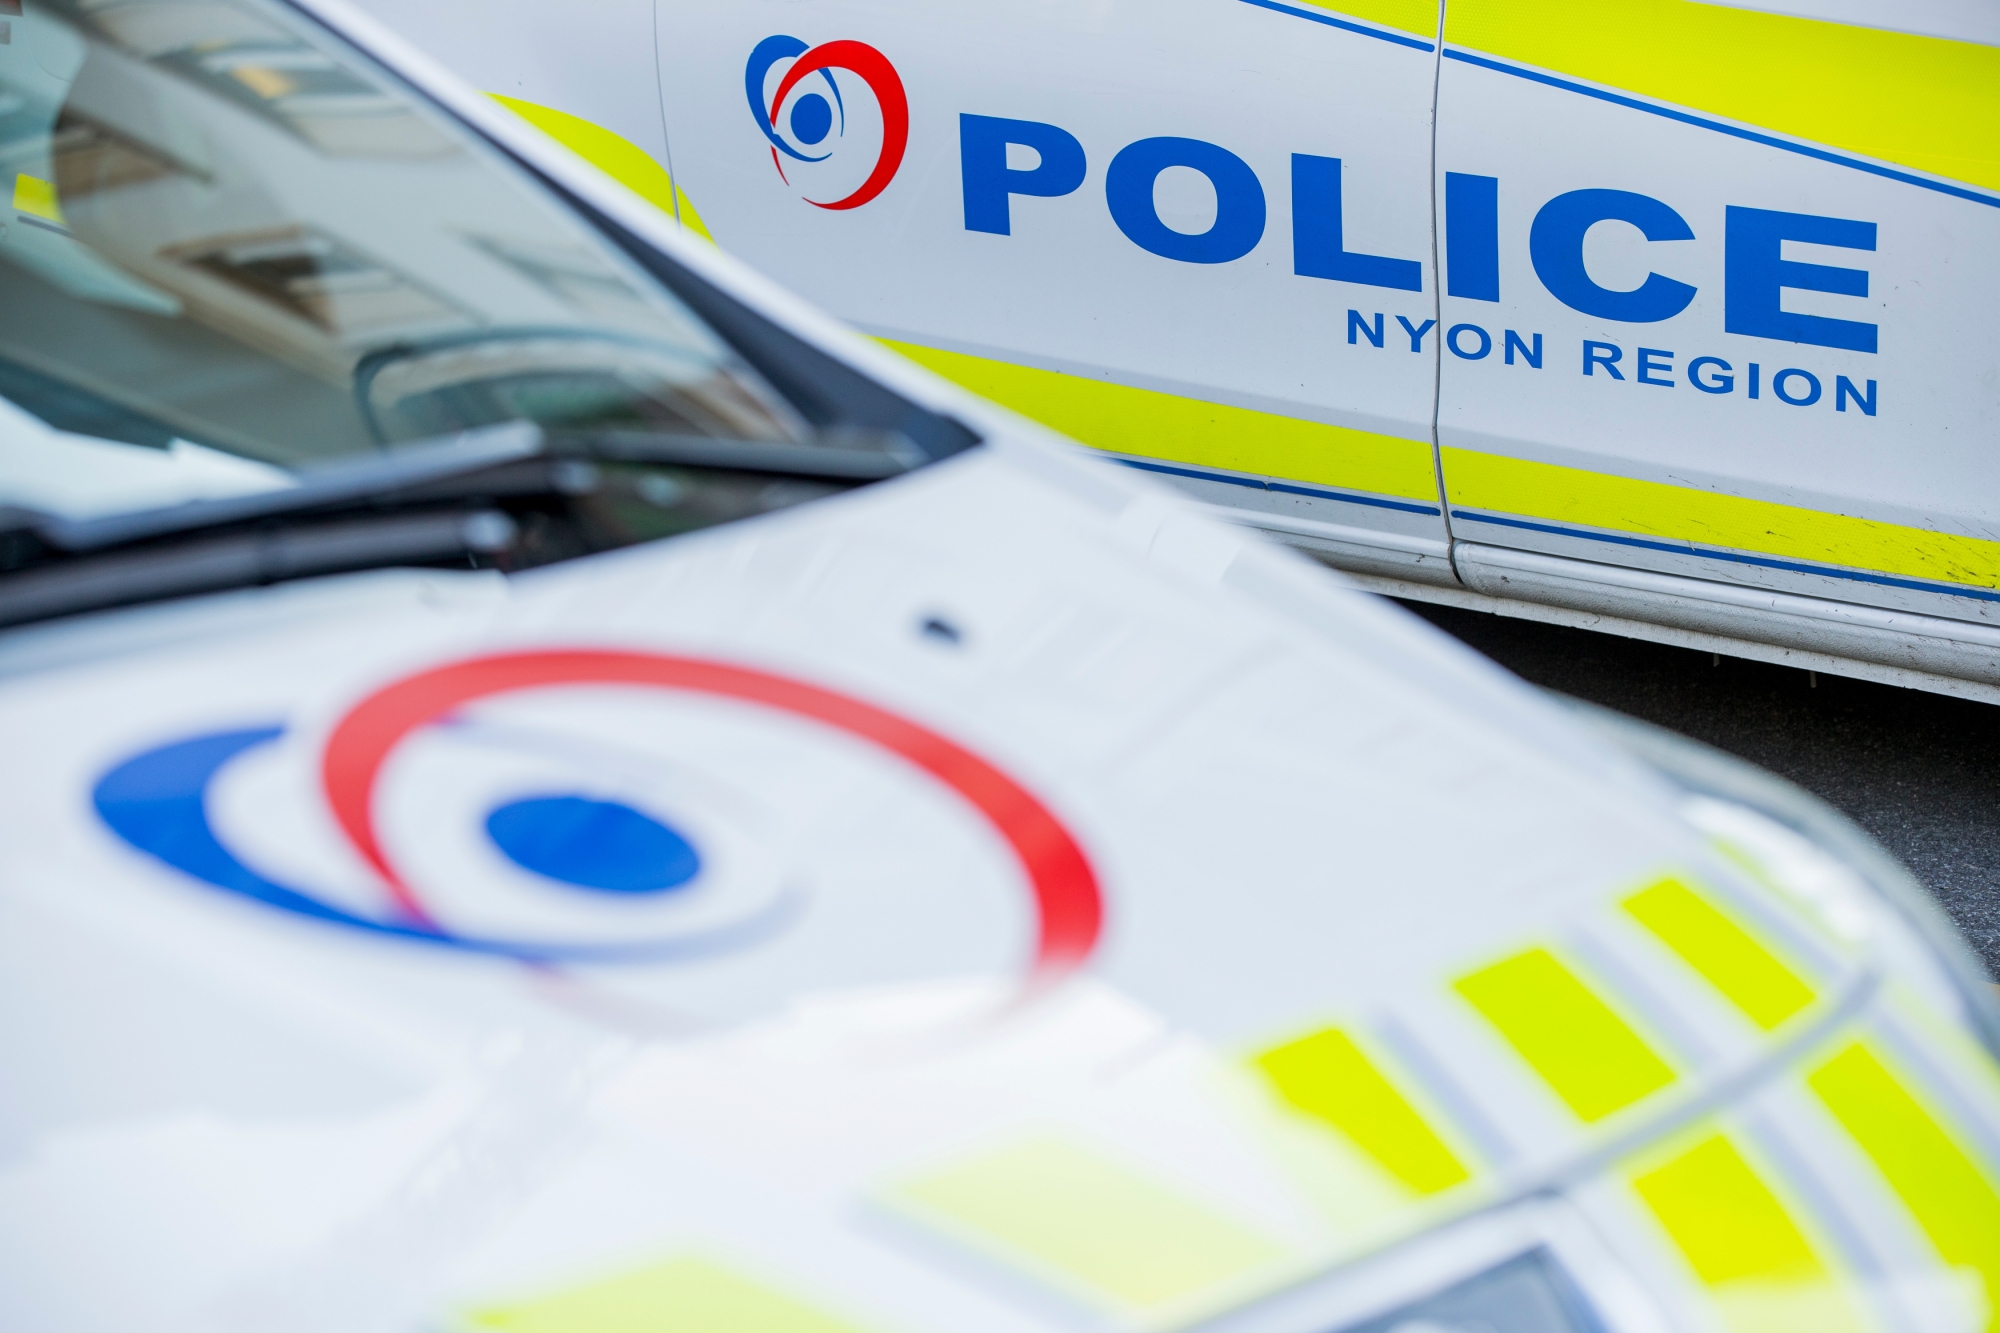 Un nouveau règlement est en vigueur pour Police Région Nyon.